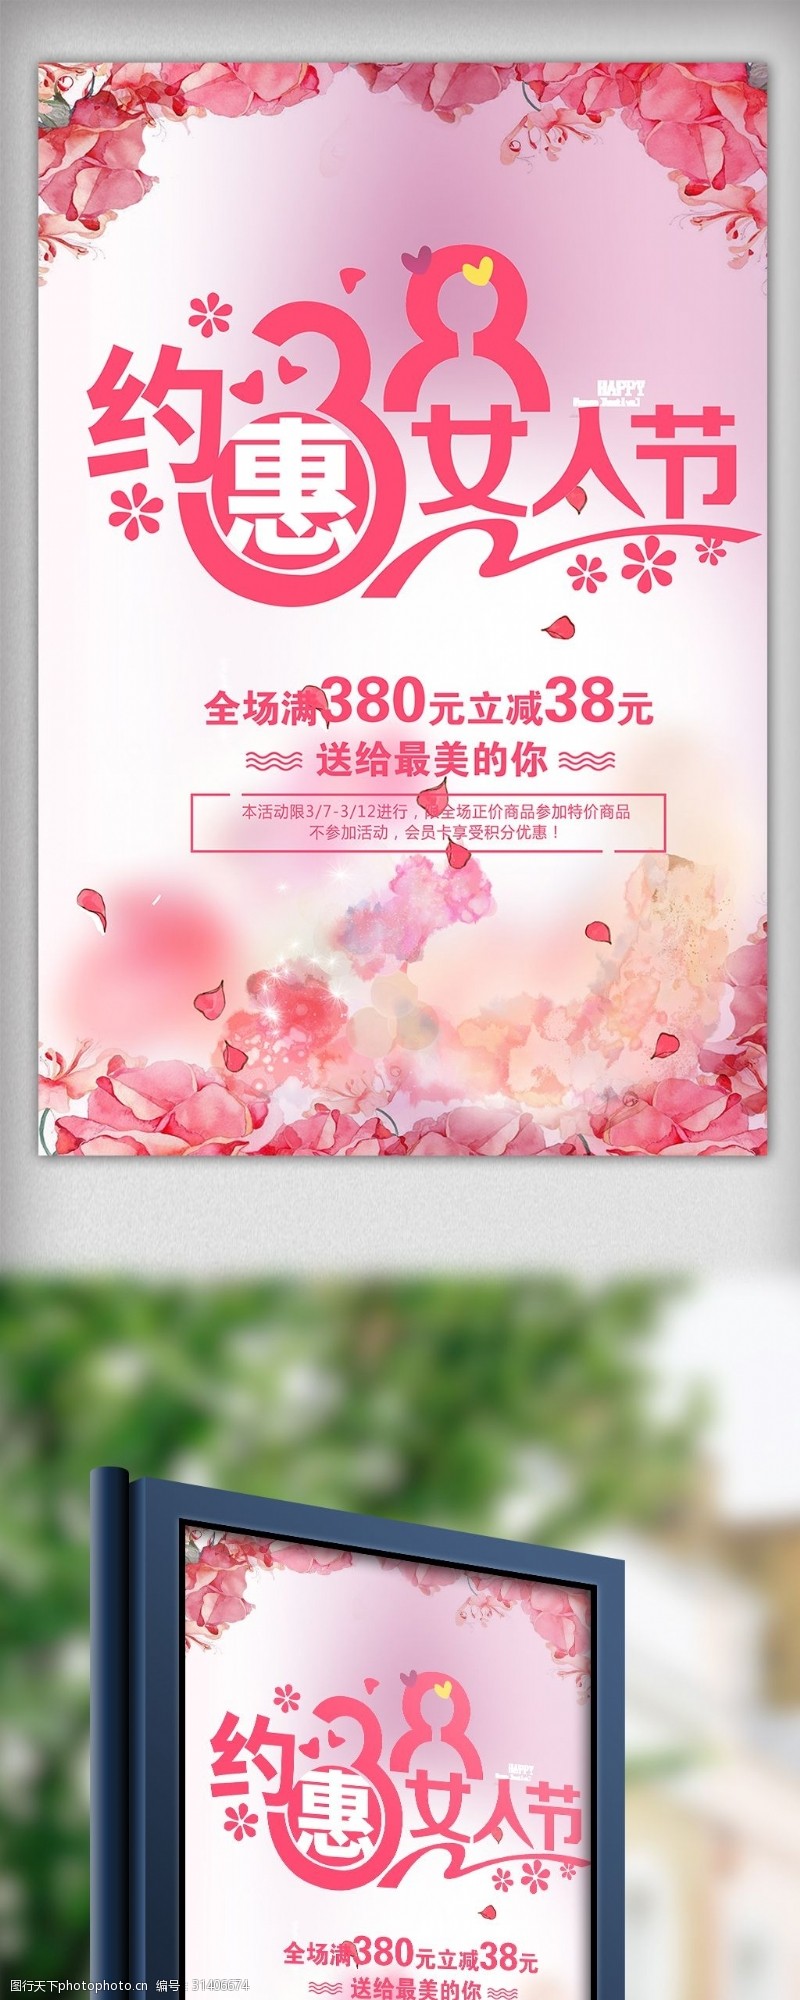 38女神节唯美浪漫女王节节日宣传海报模板